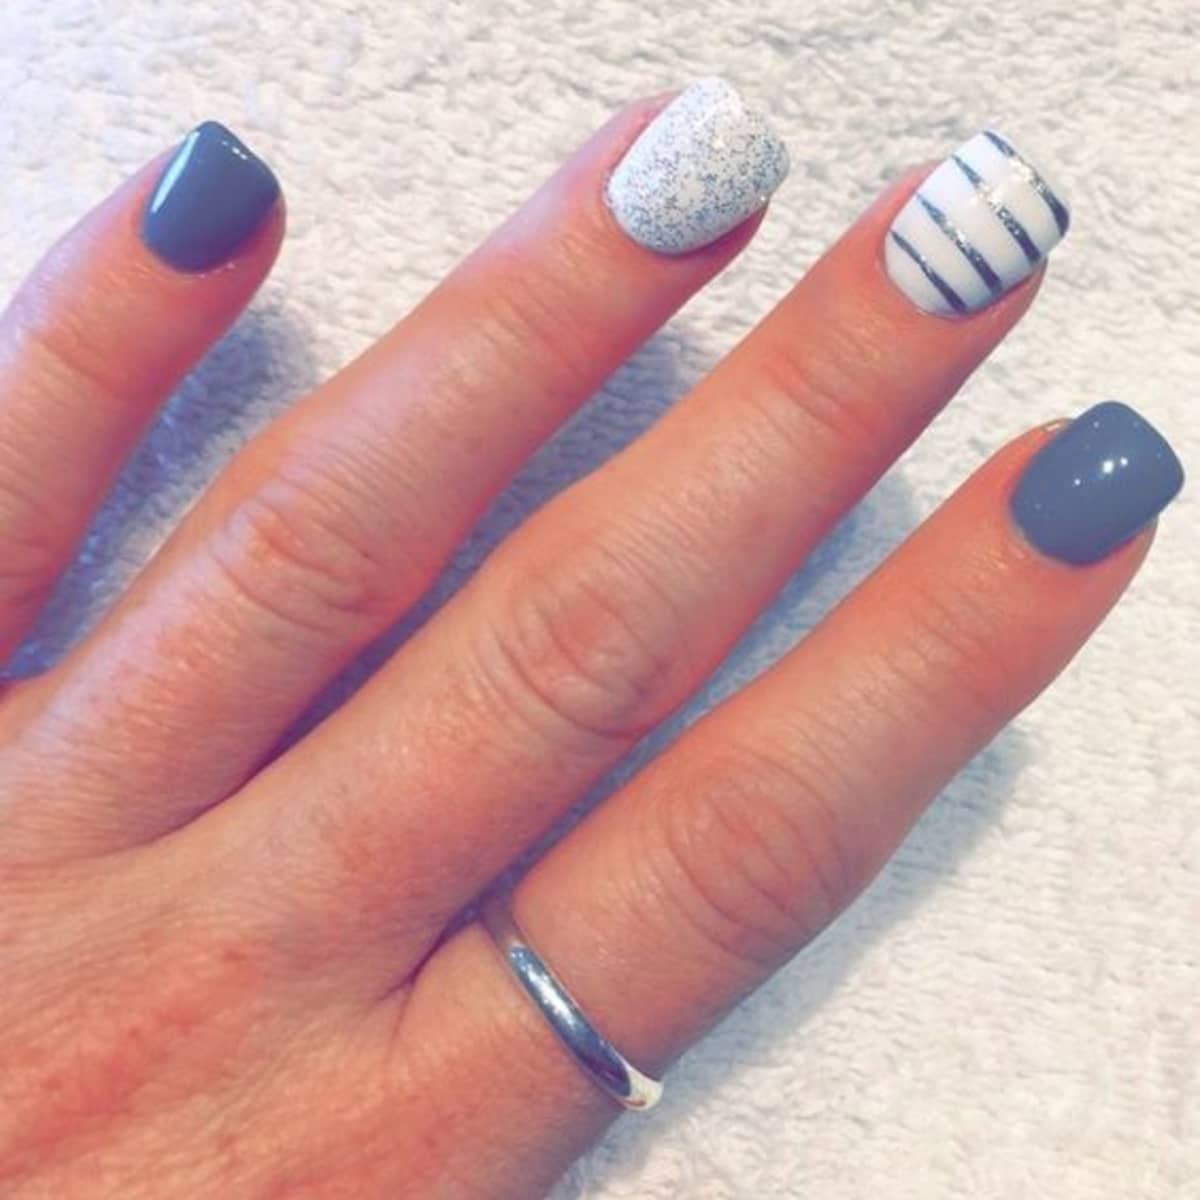 cute nail designs for women